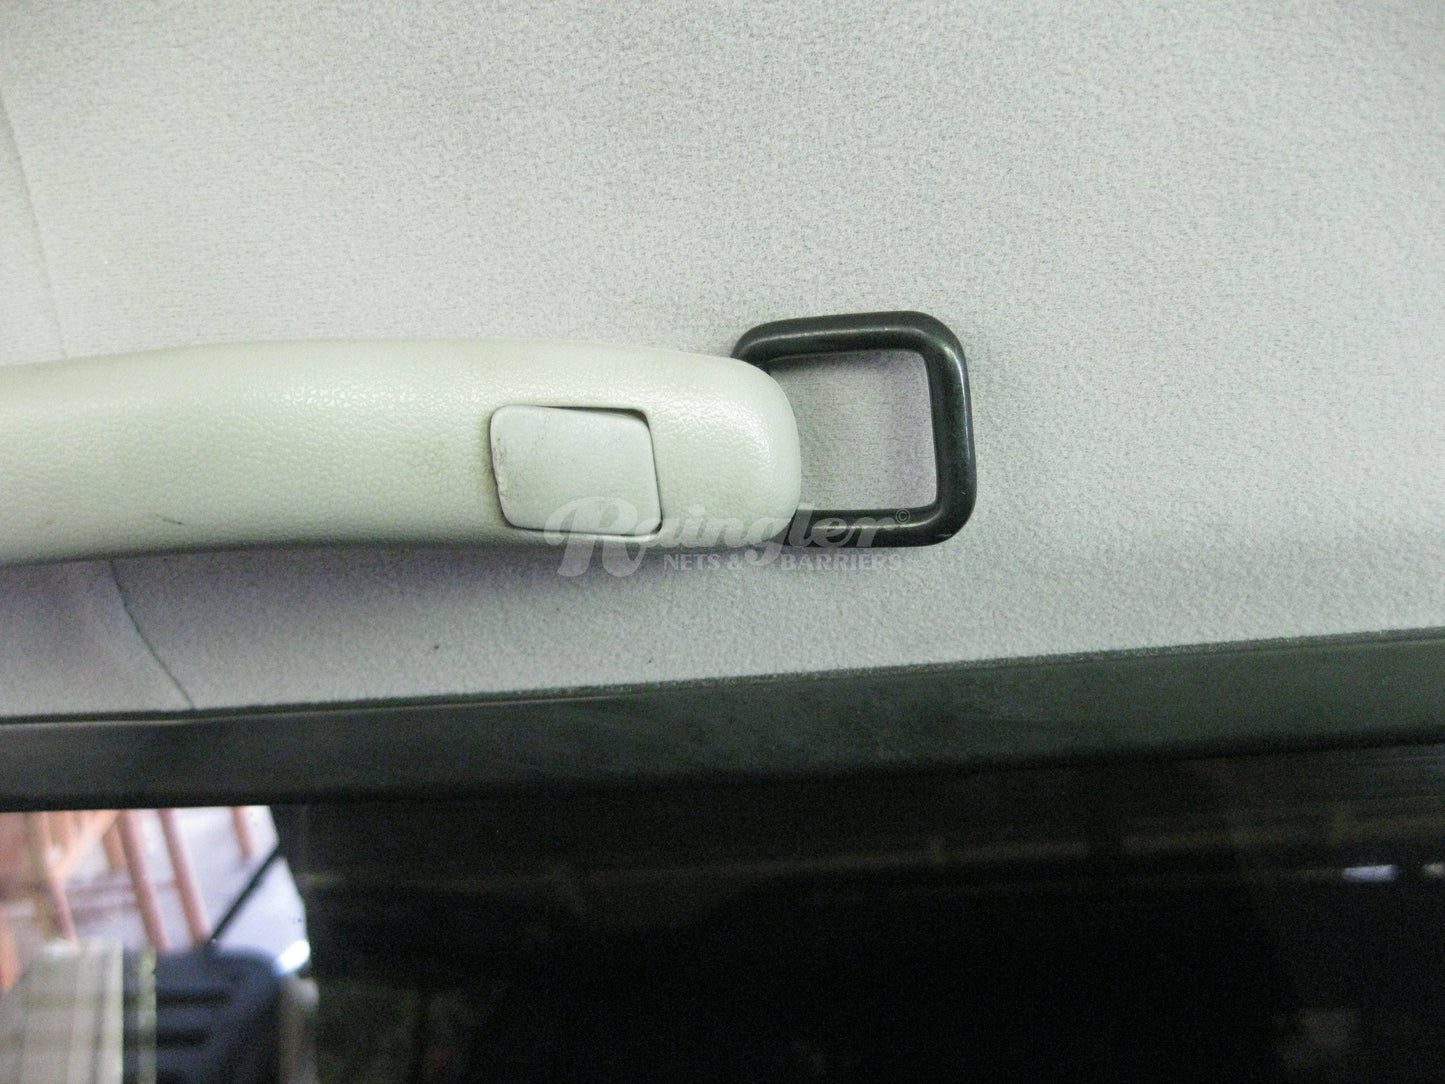 2010 - Newer Lexus GX 460 (J150) Behind 2nd Row Seats Rear Barrier Divider Net-Raingler